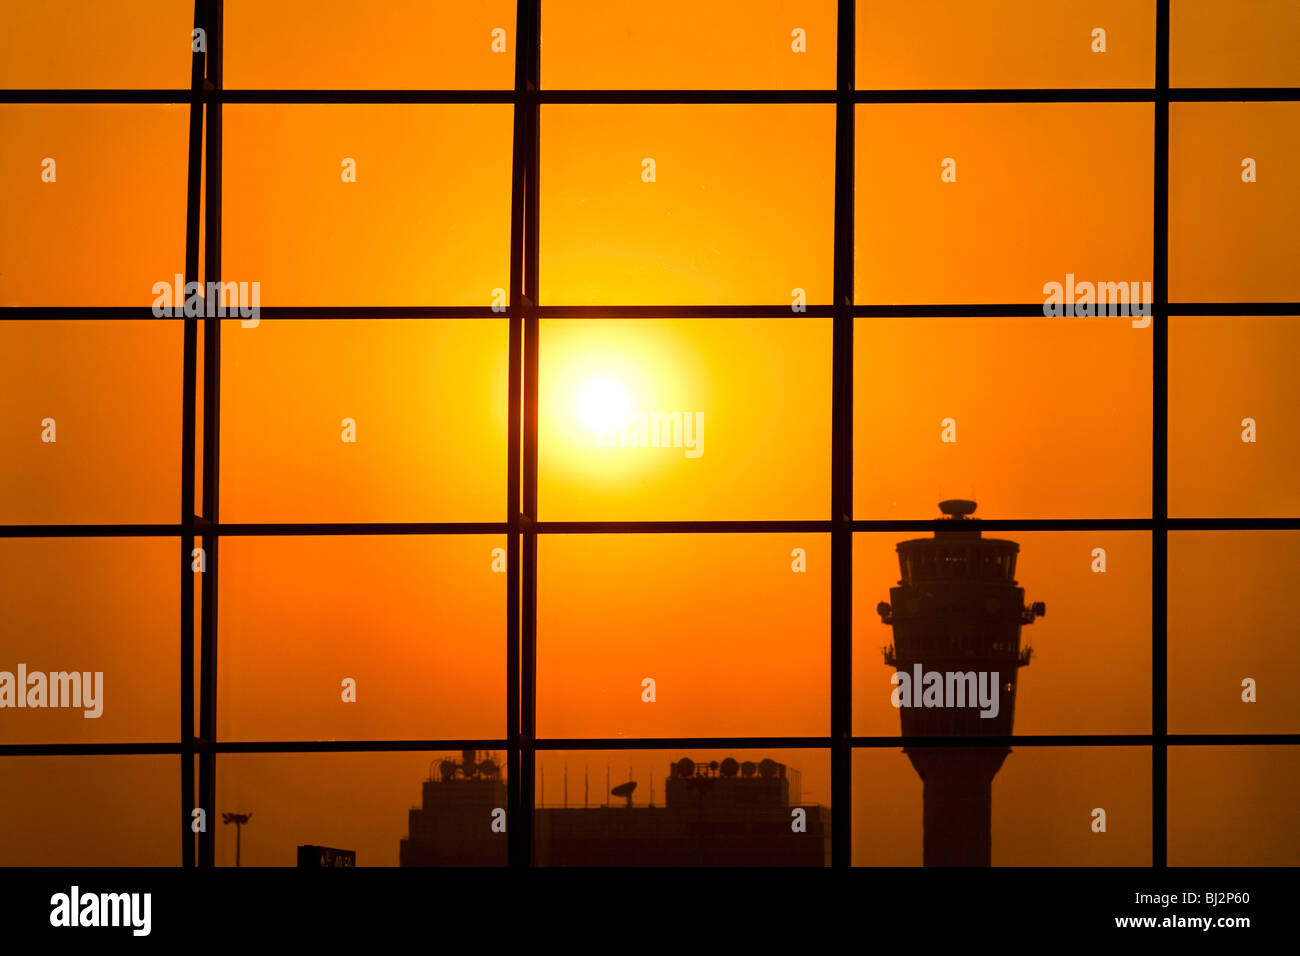 Airport control tower, Hong Kong, China Stock Photo